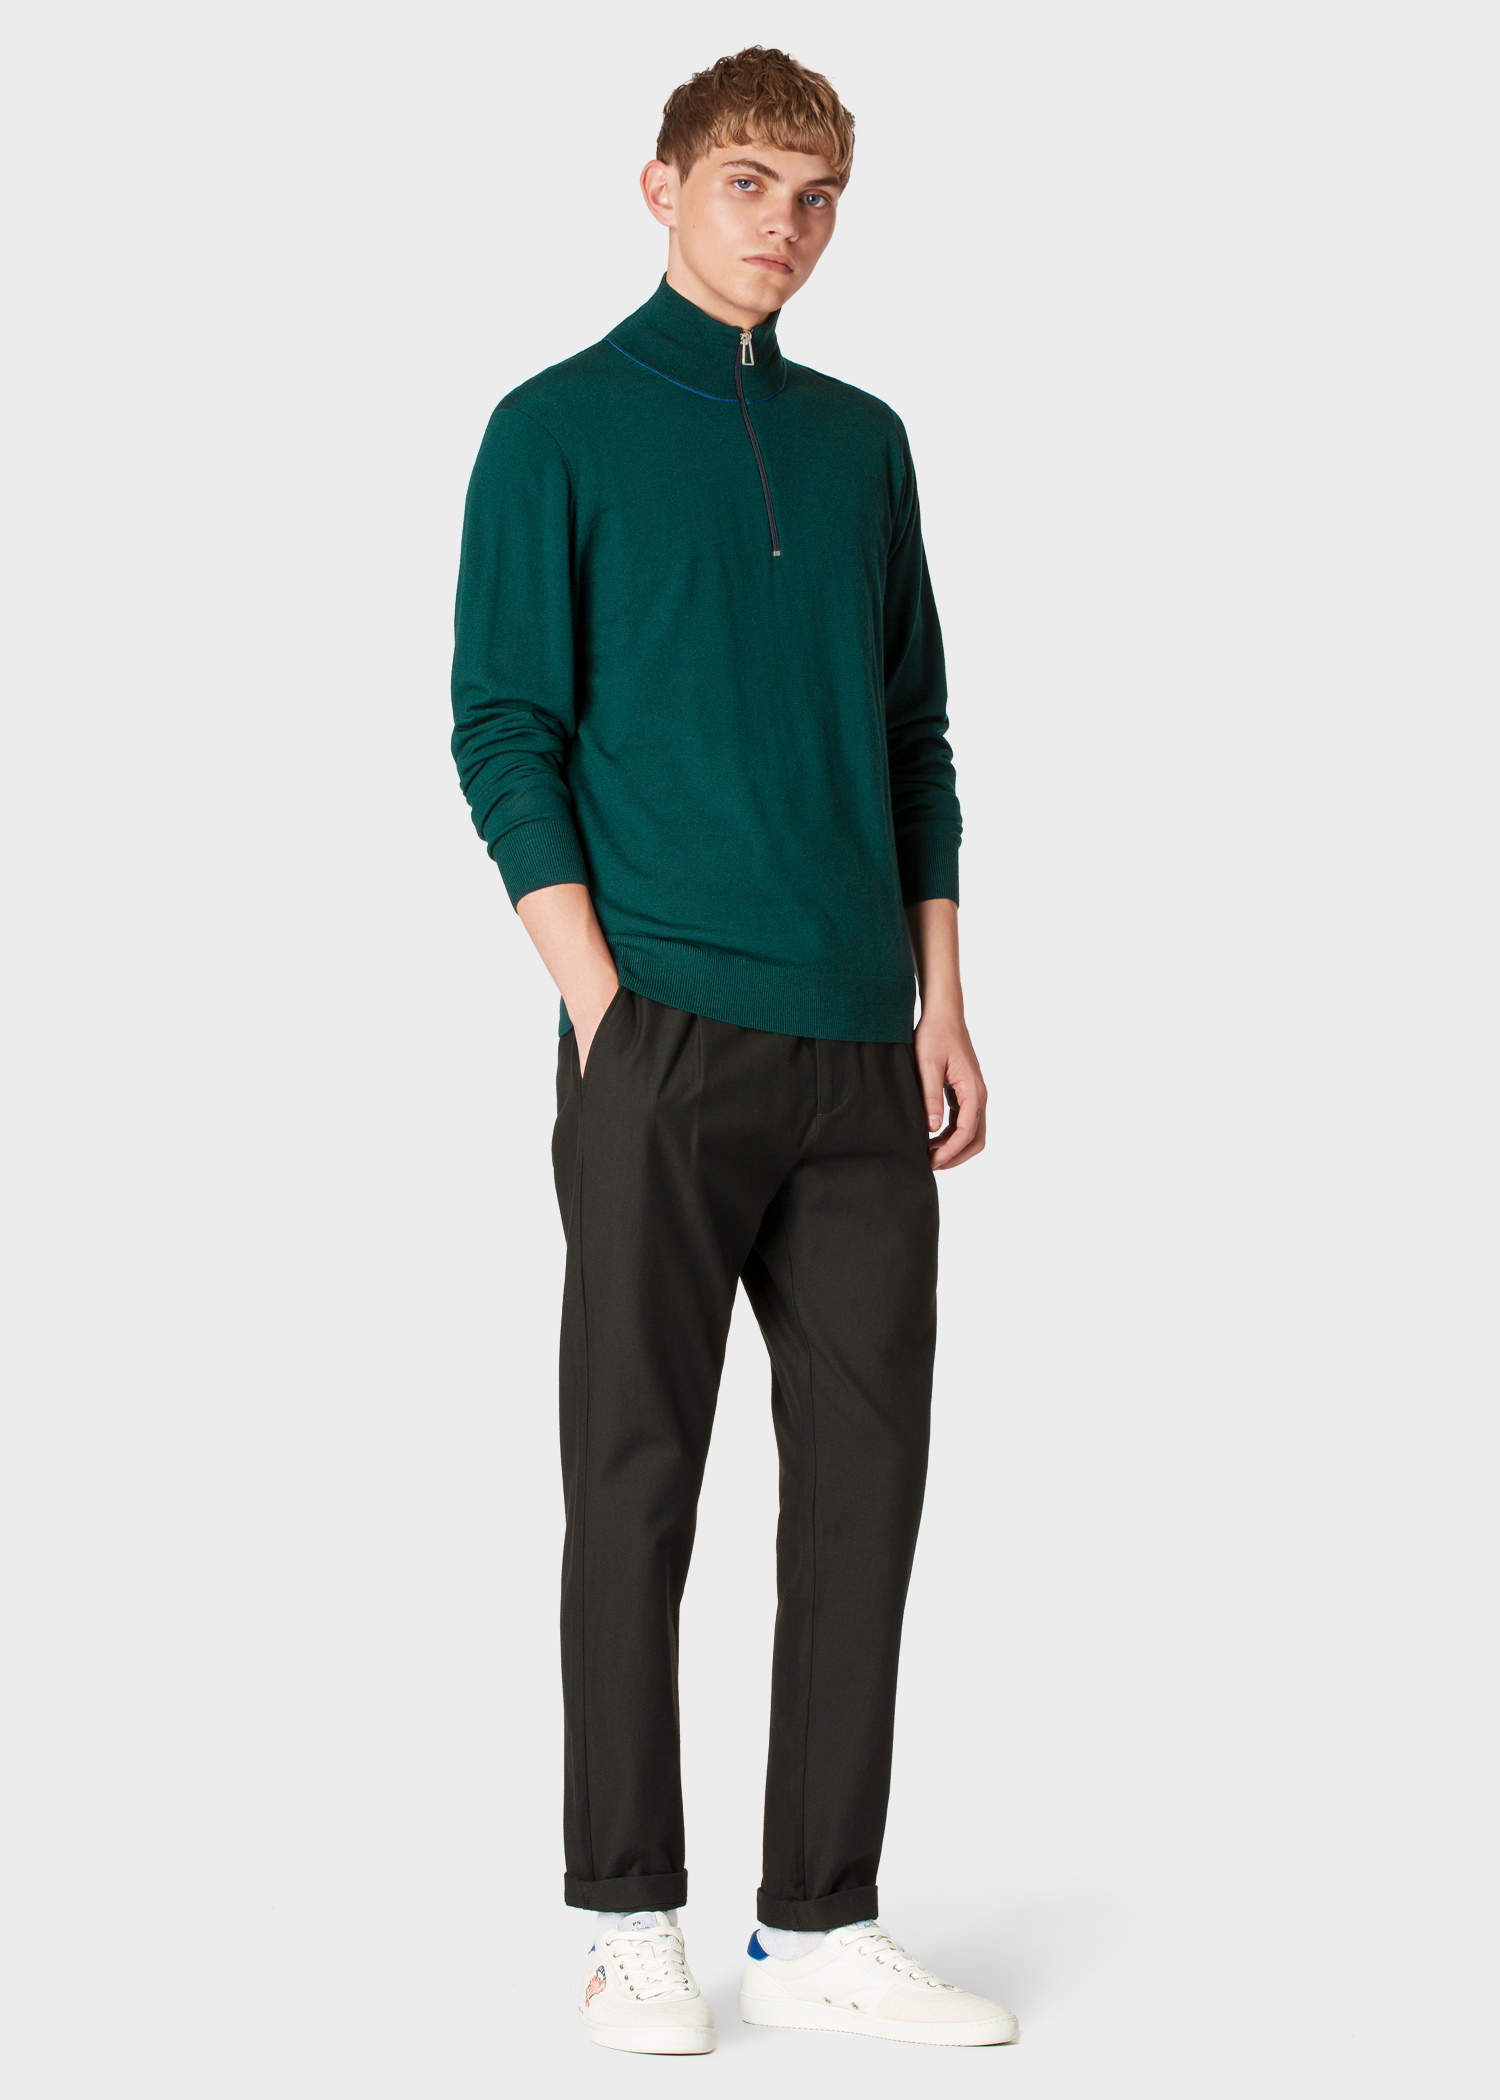 Model front view - Men's Dark Green Half-Zip Merino Wool Sweater Paul Smith